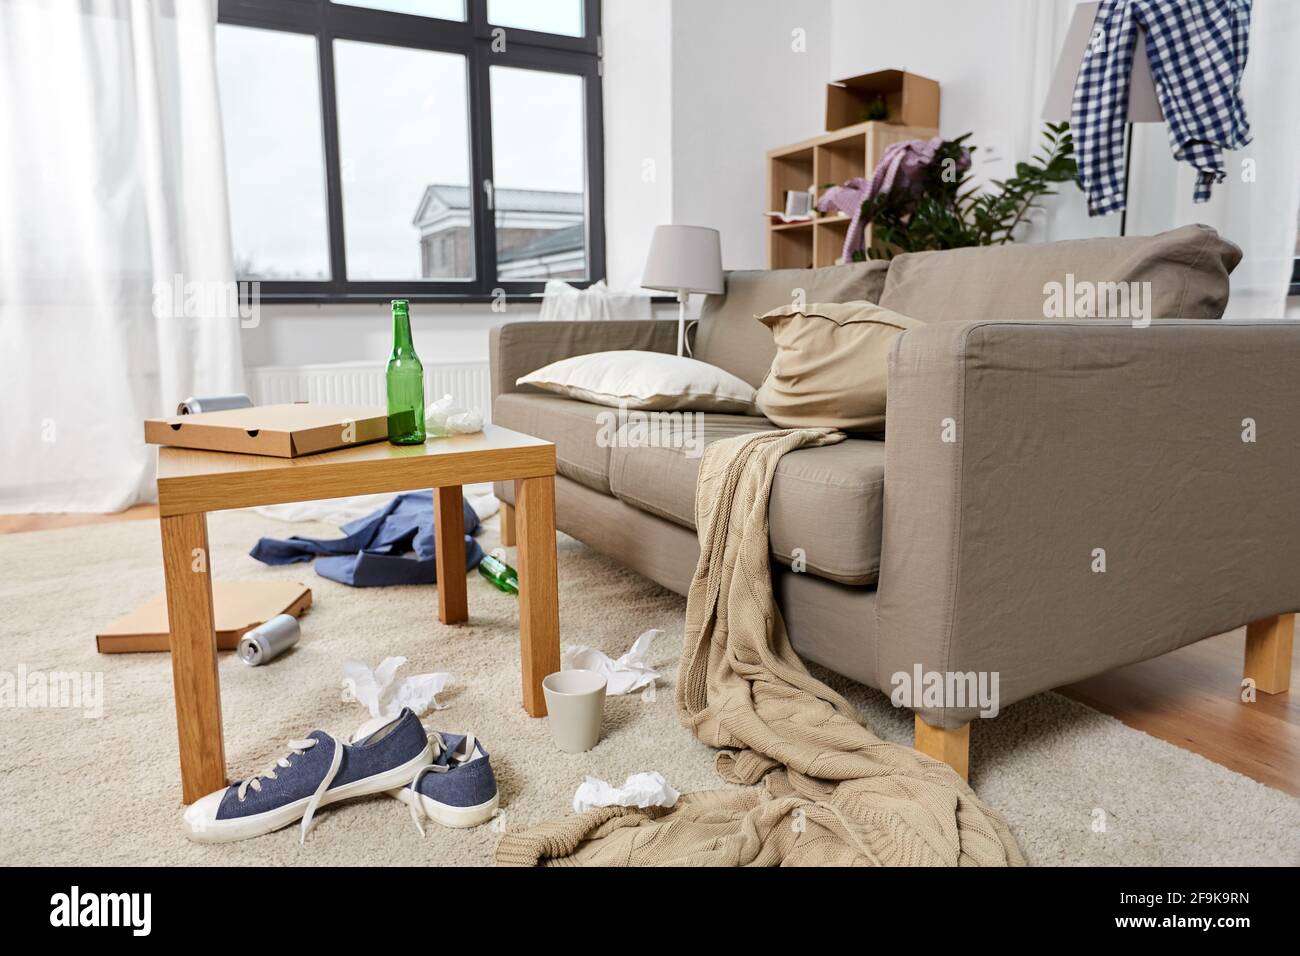 la sala de estar del hogar estaba sucia y tenía cosas dispersas Fotografía  de stock - Alamy